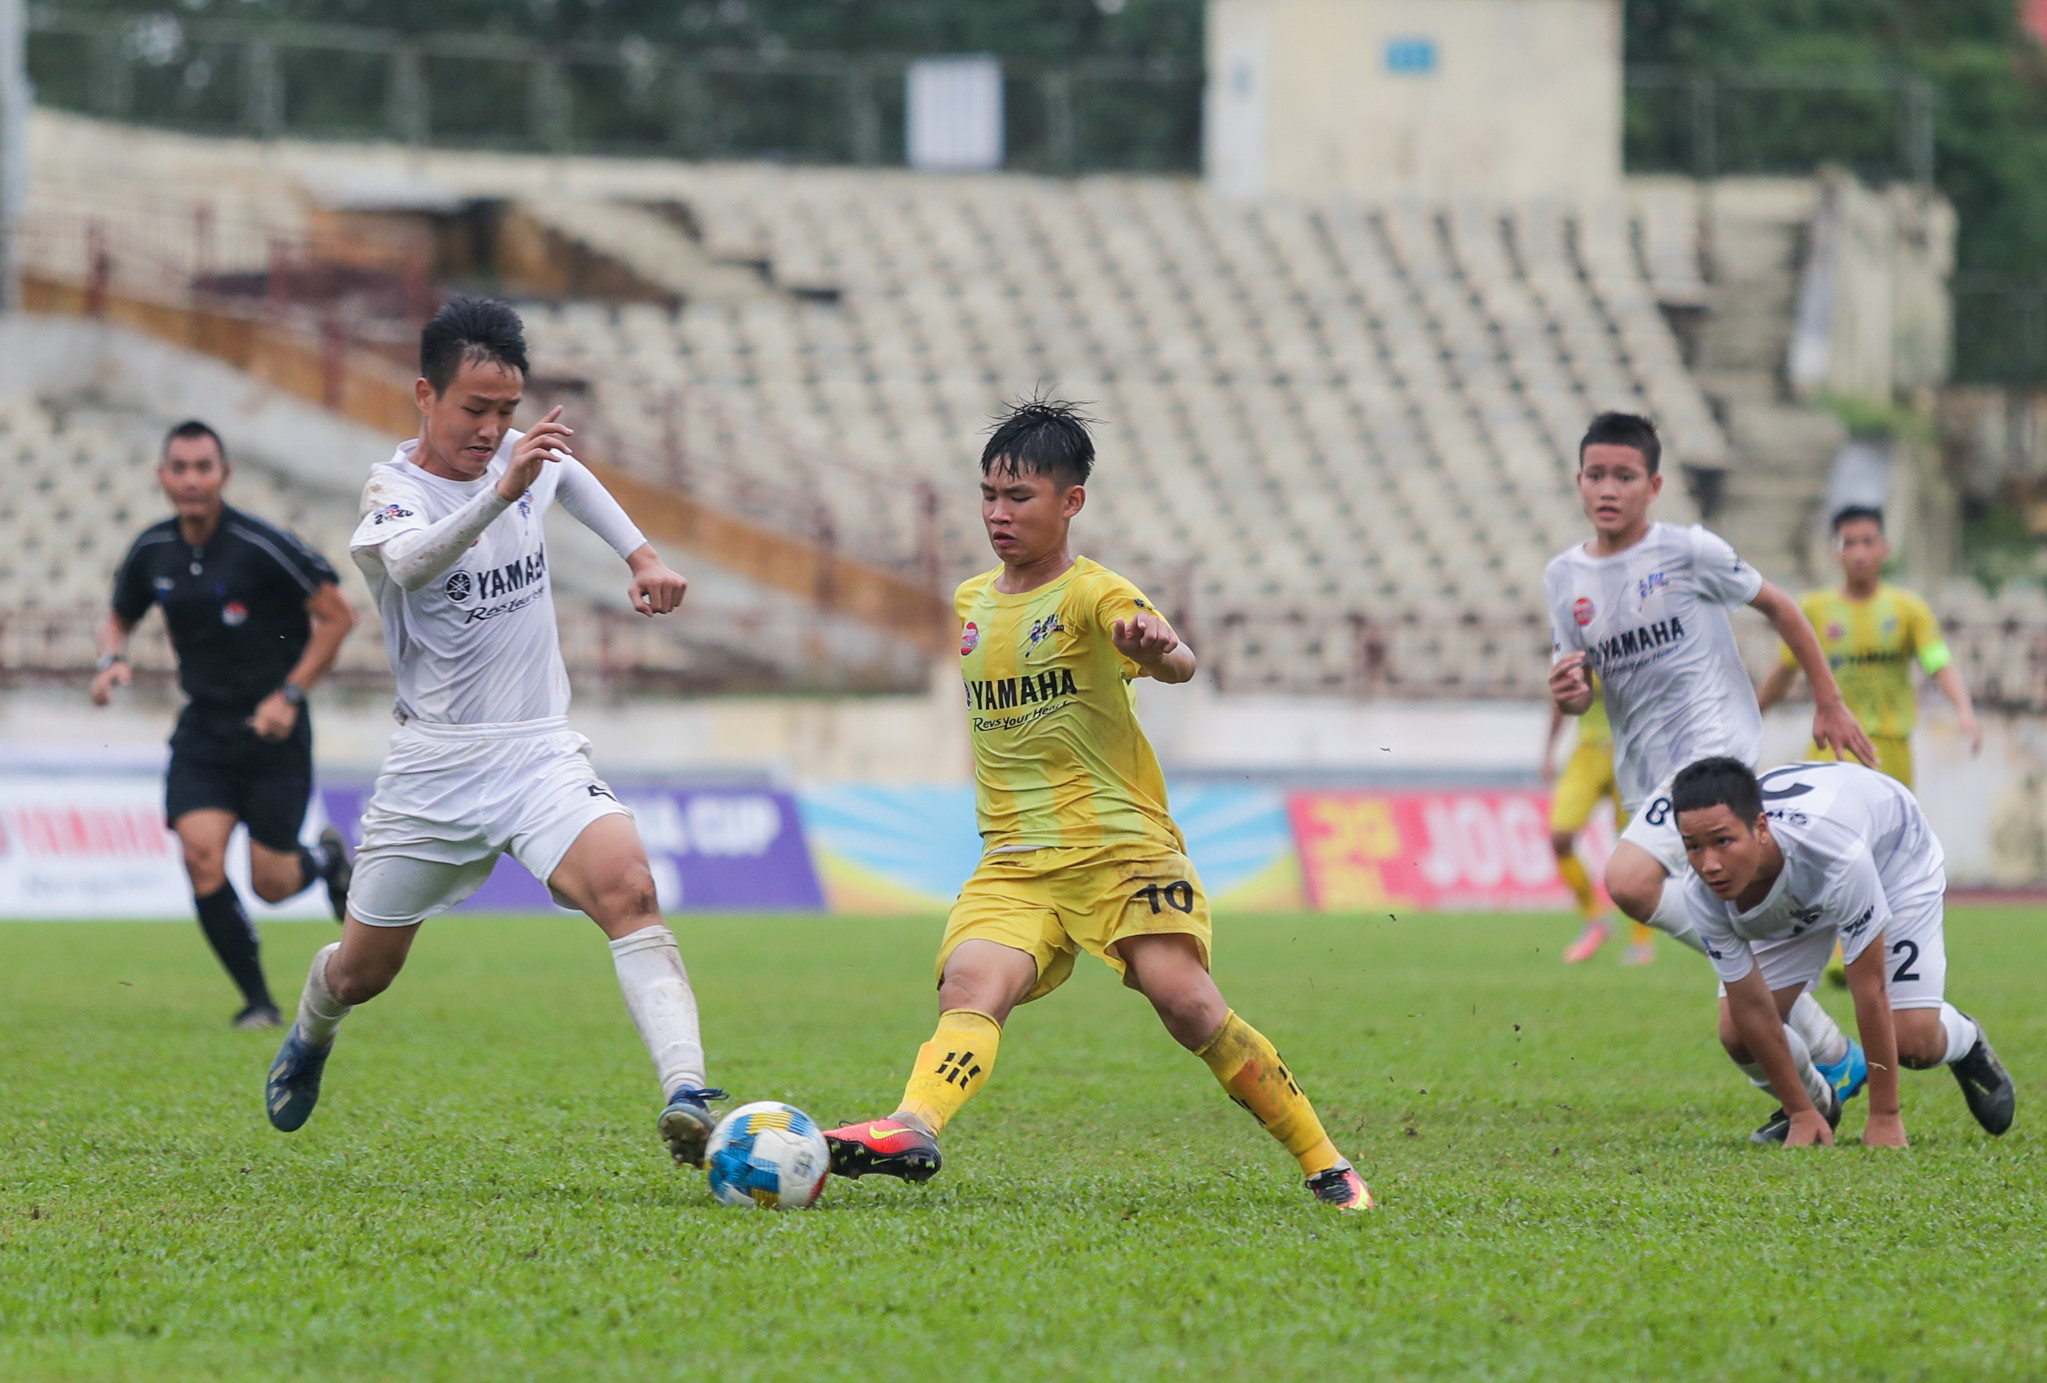 Để có mặt tại trận chung kết Giải bóng đá Thiếu niên toàn quốc 2020, SLNA đã vượt qua hàng loạt những đội bóng mạnh như HAGL, PVF hay Thừa Thiên Huế trong trận Tứ kết và Hà Nội tại Bán kết. Ảnh: Đức Anh